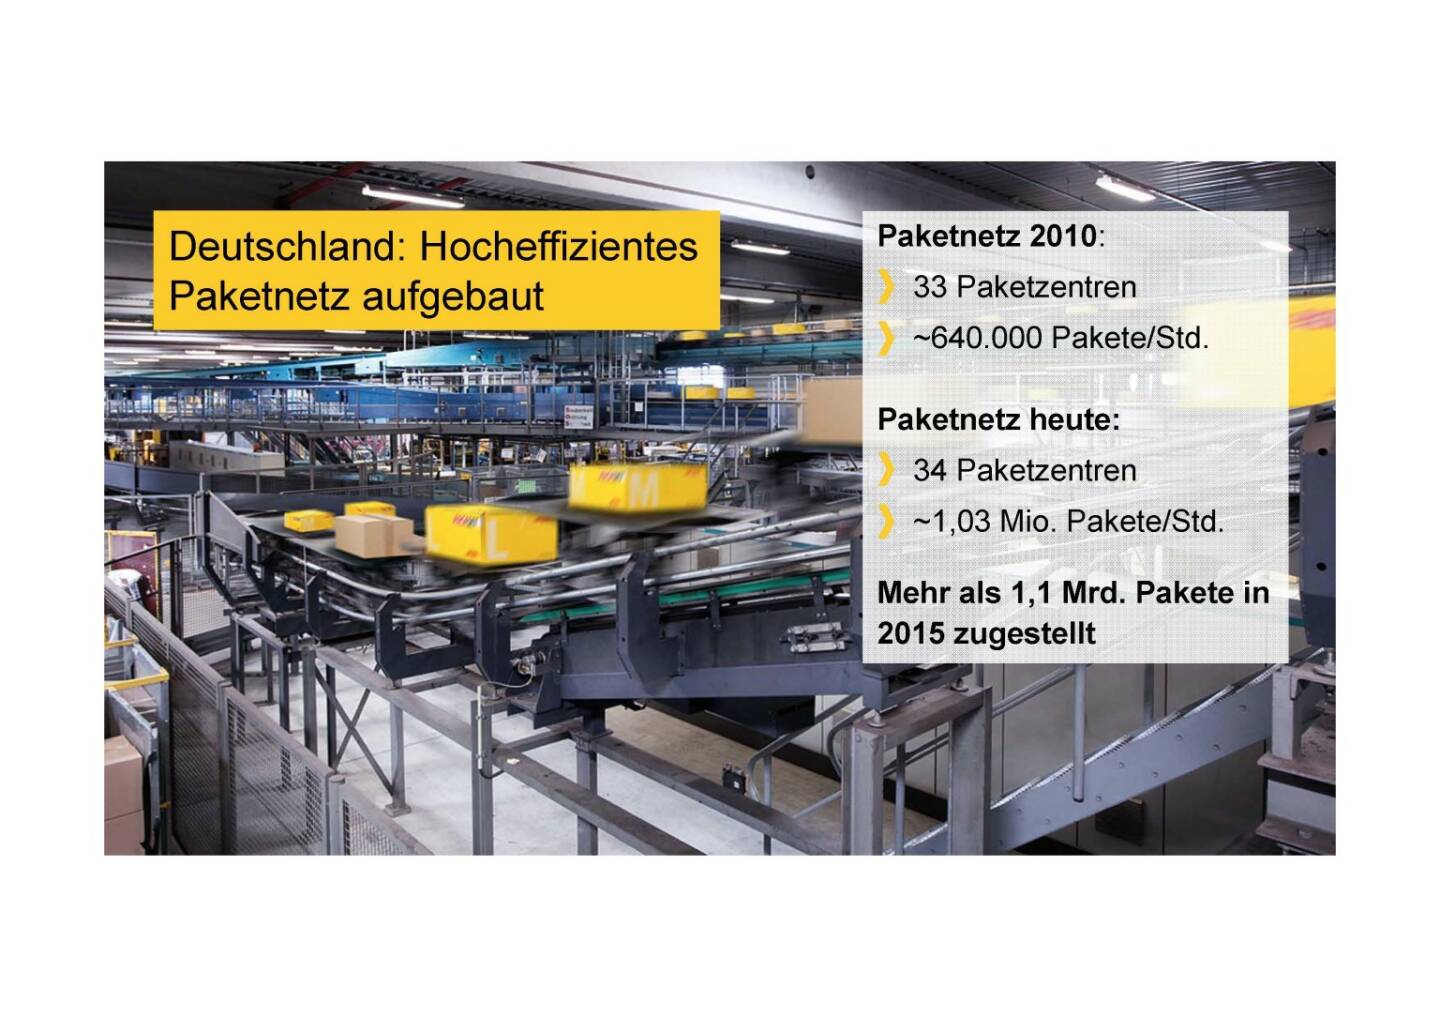 Deutsche Post - Hocheffizientes Paketnetz